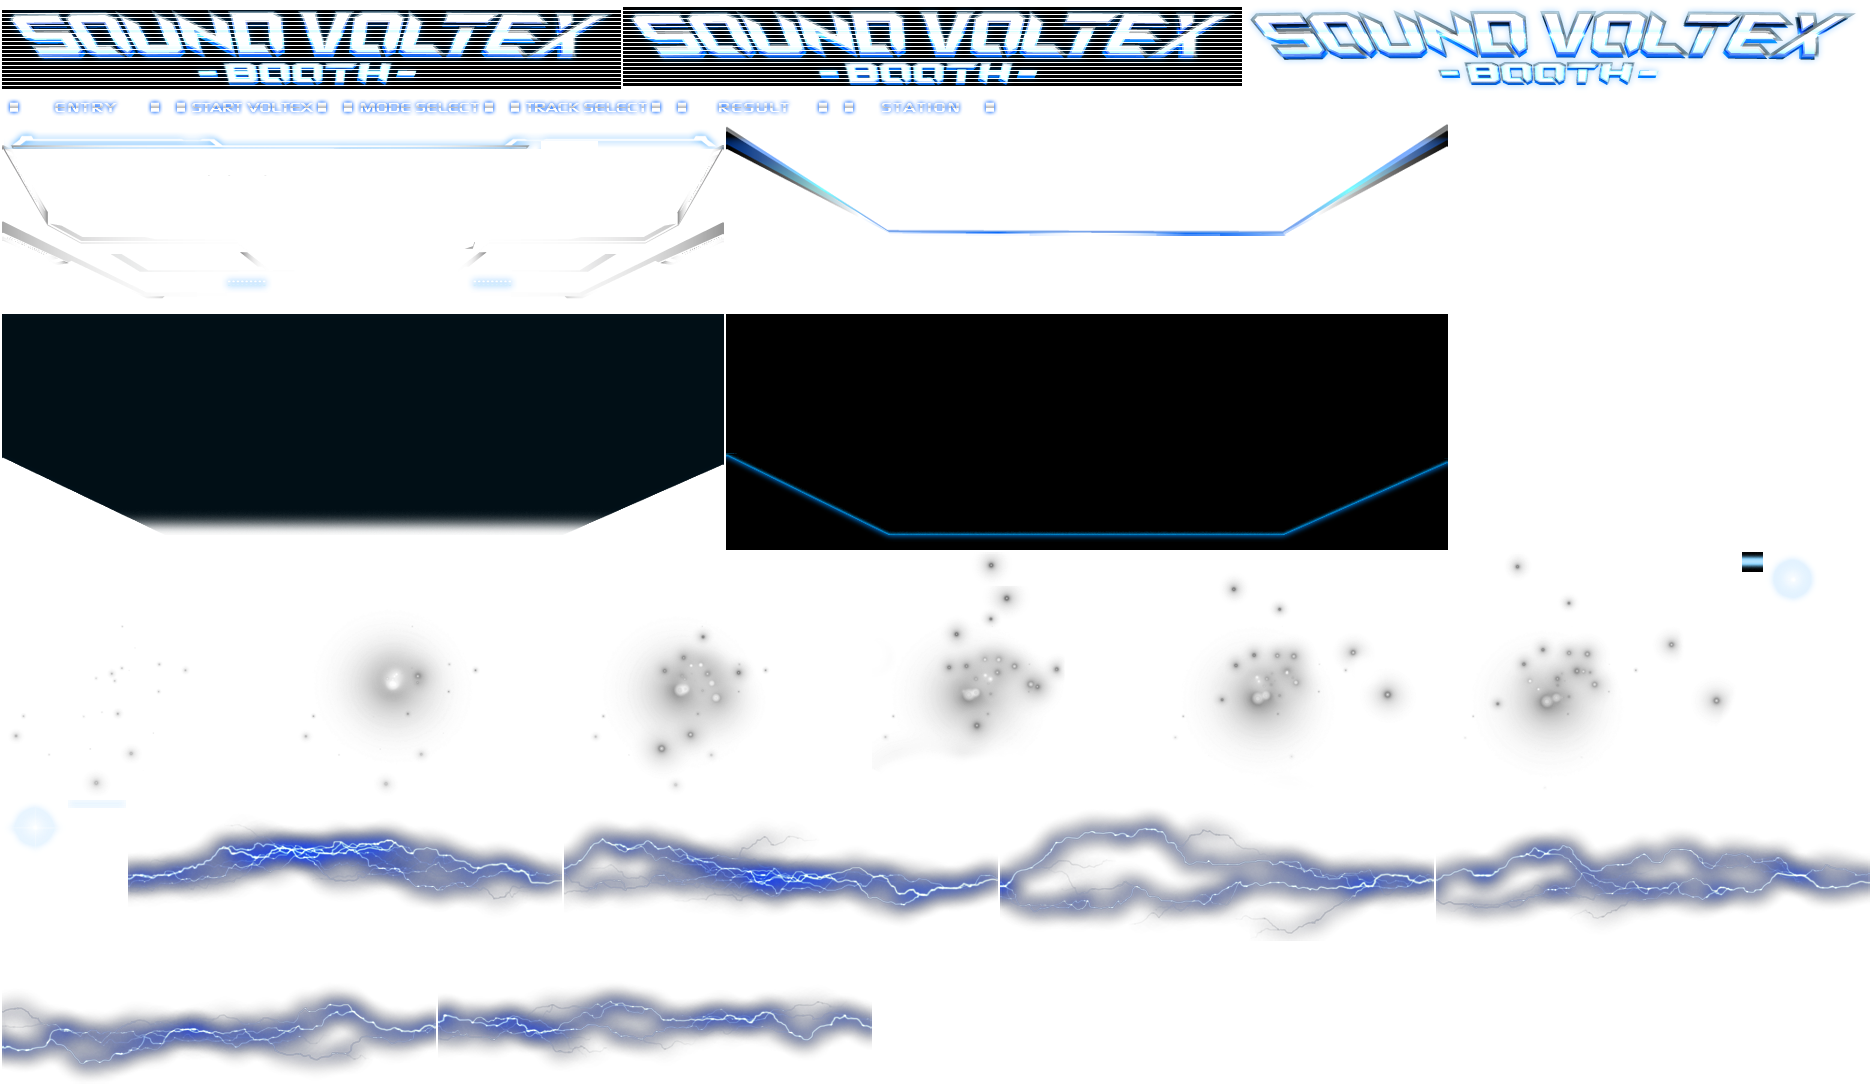 Sound Voltex Series - Frame